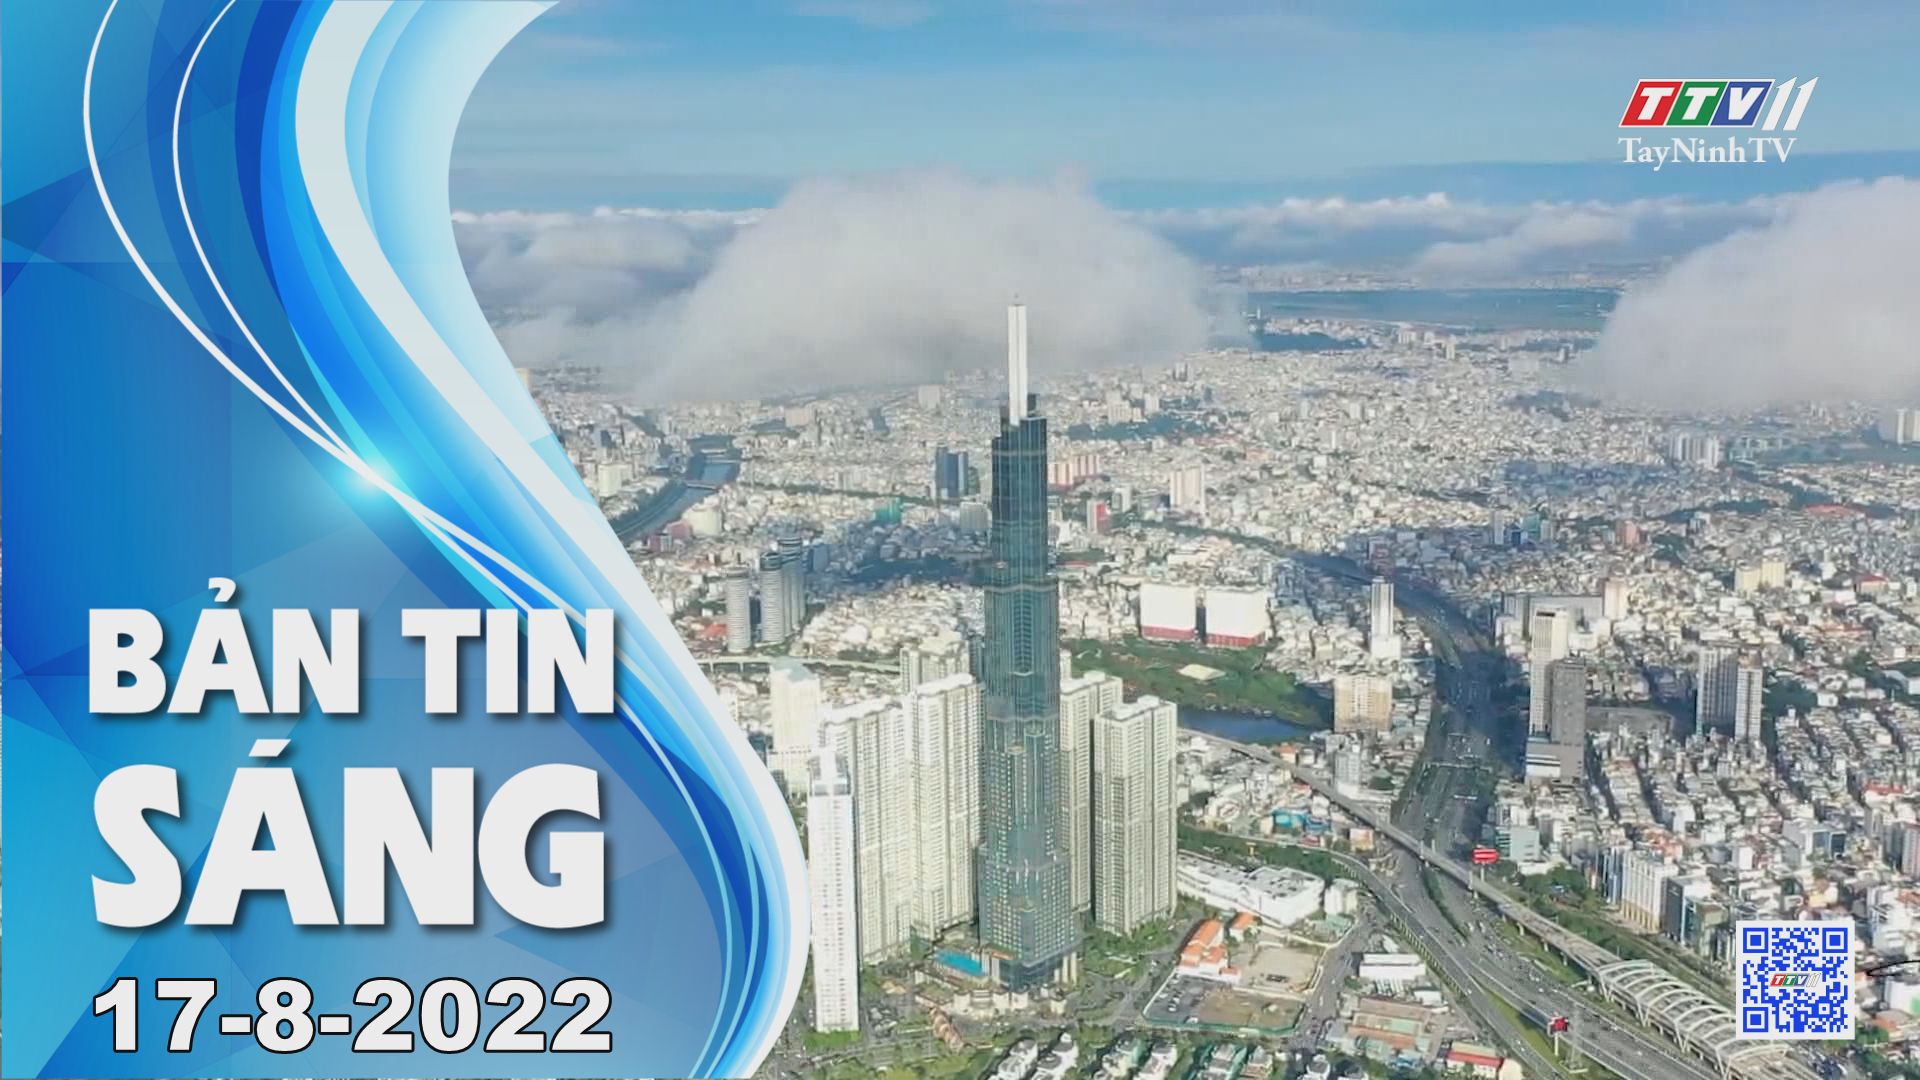 Bản tin sáng 17-8-2022 | Tin tức hôm nay | TayNinhTV